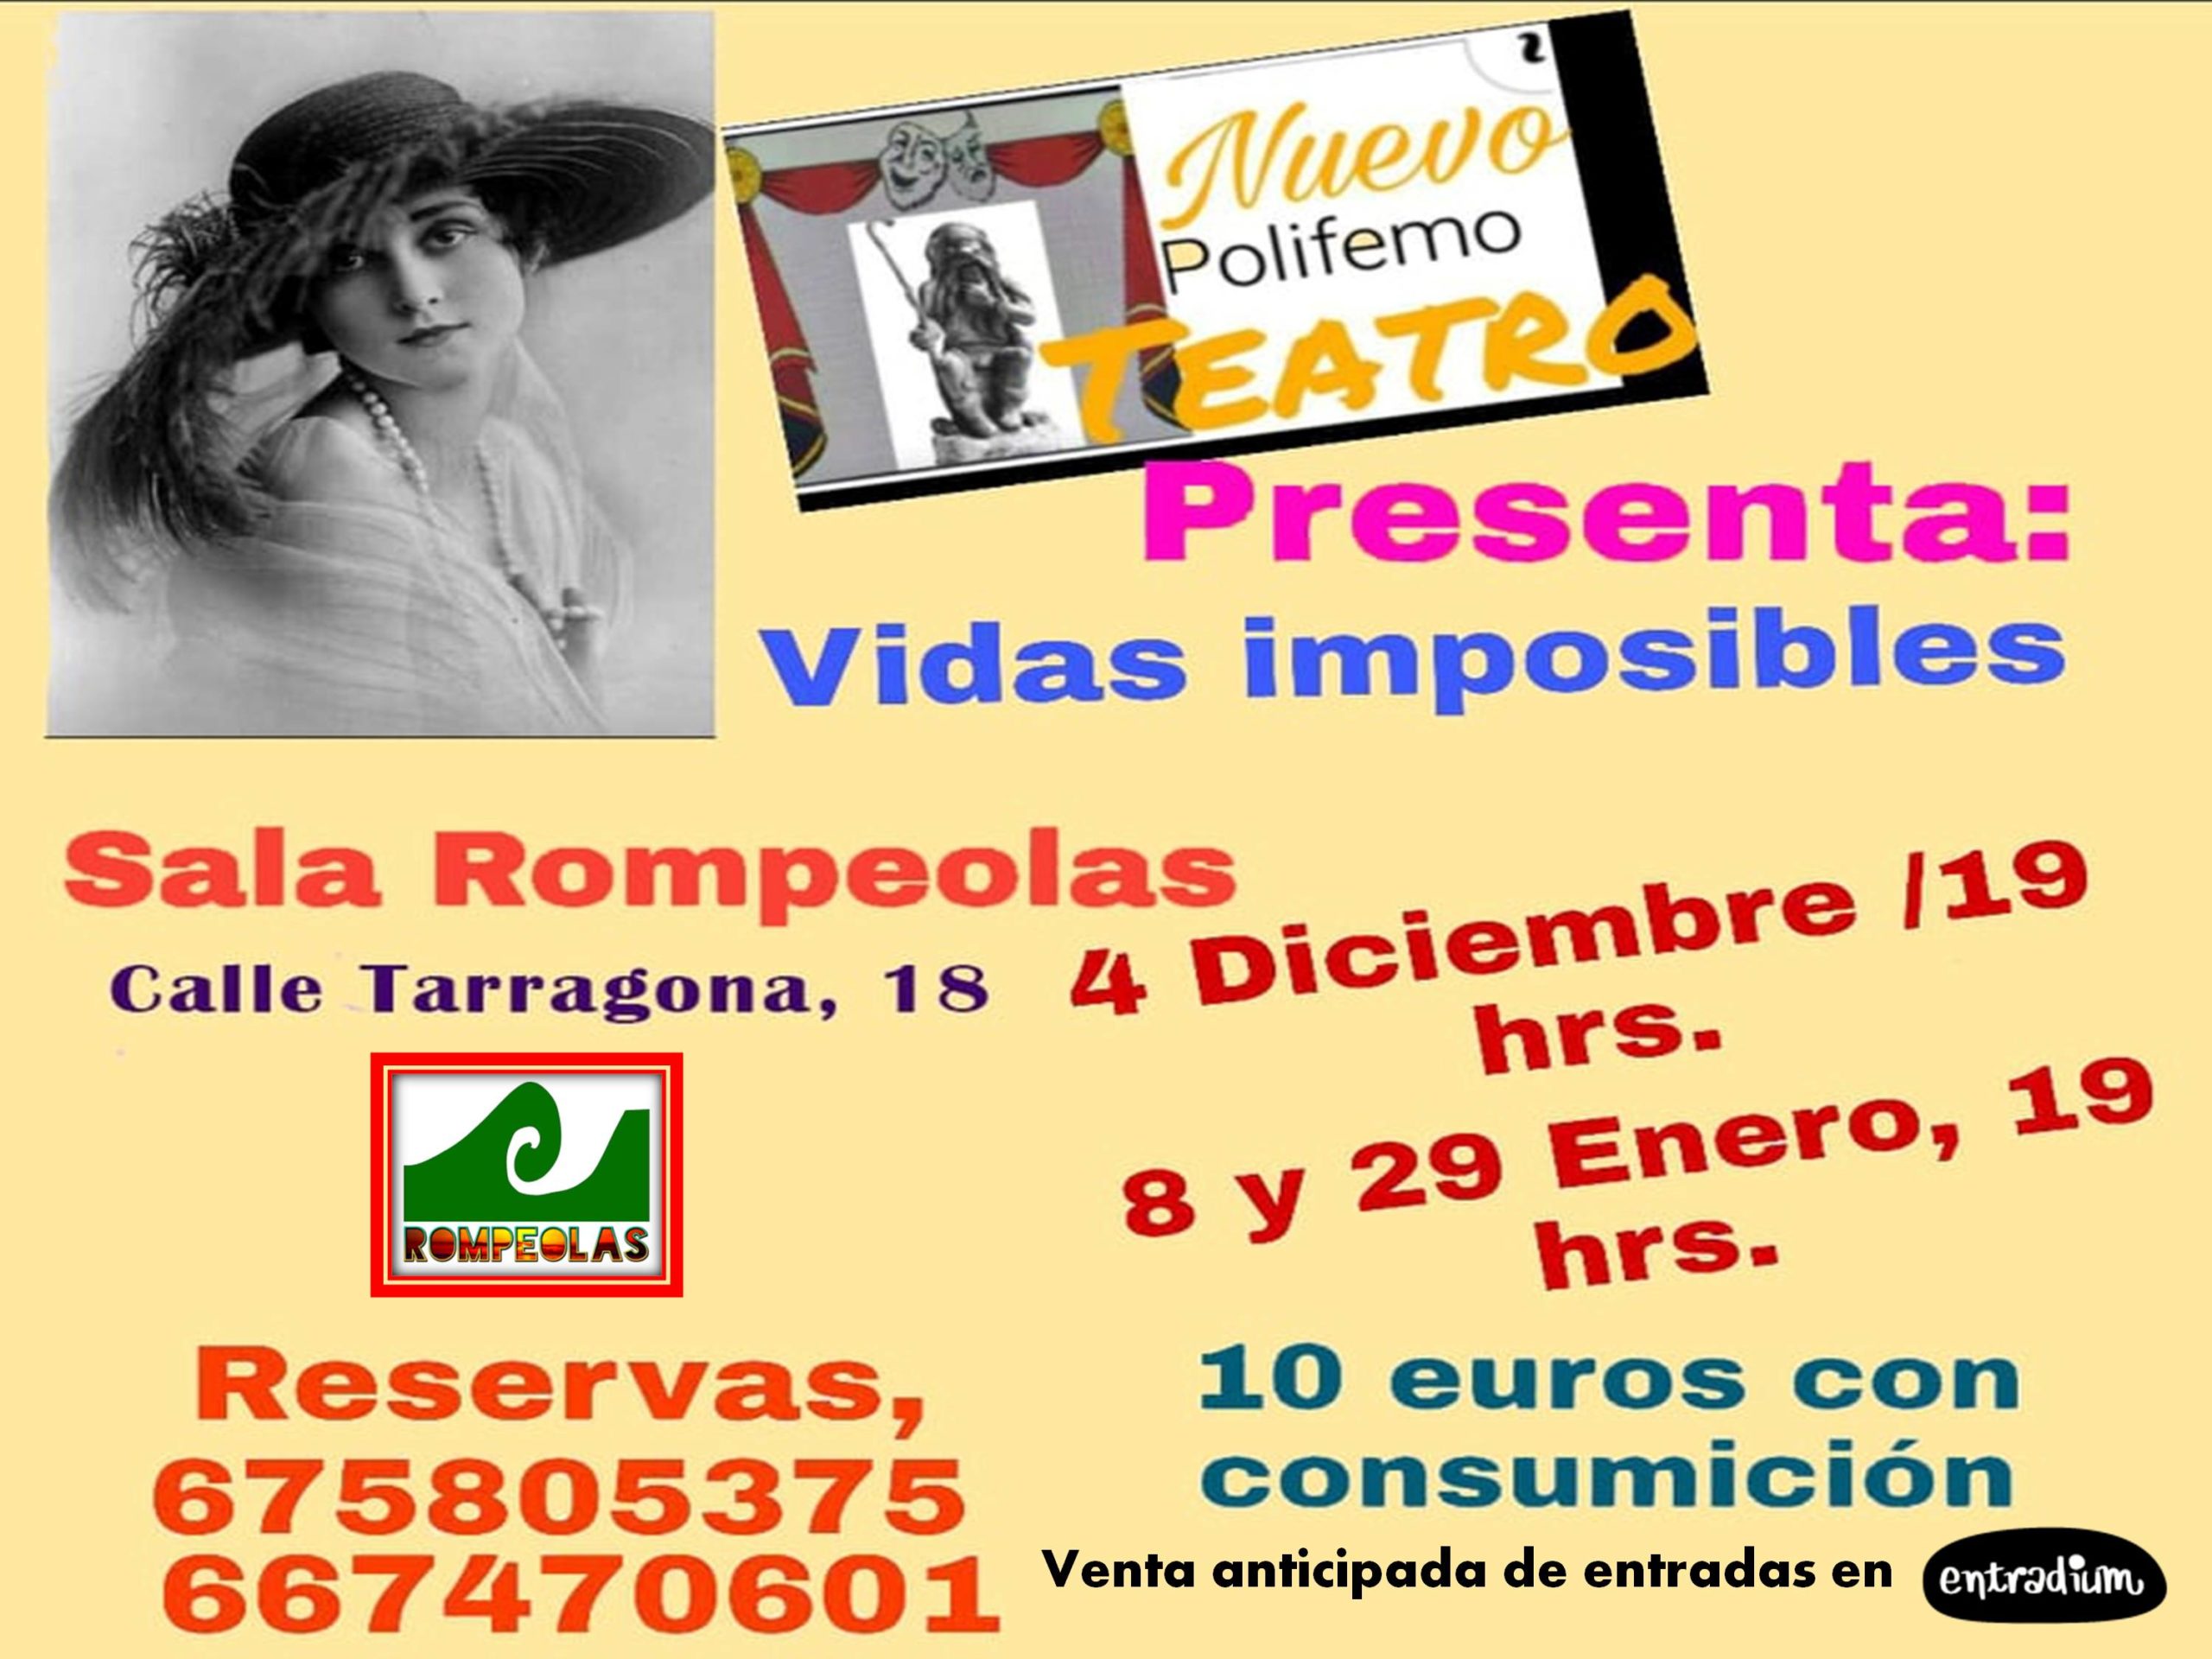 Teatro Nuevo Polifemo presenta: Vidas Imposibles @ Rompeolas Locales